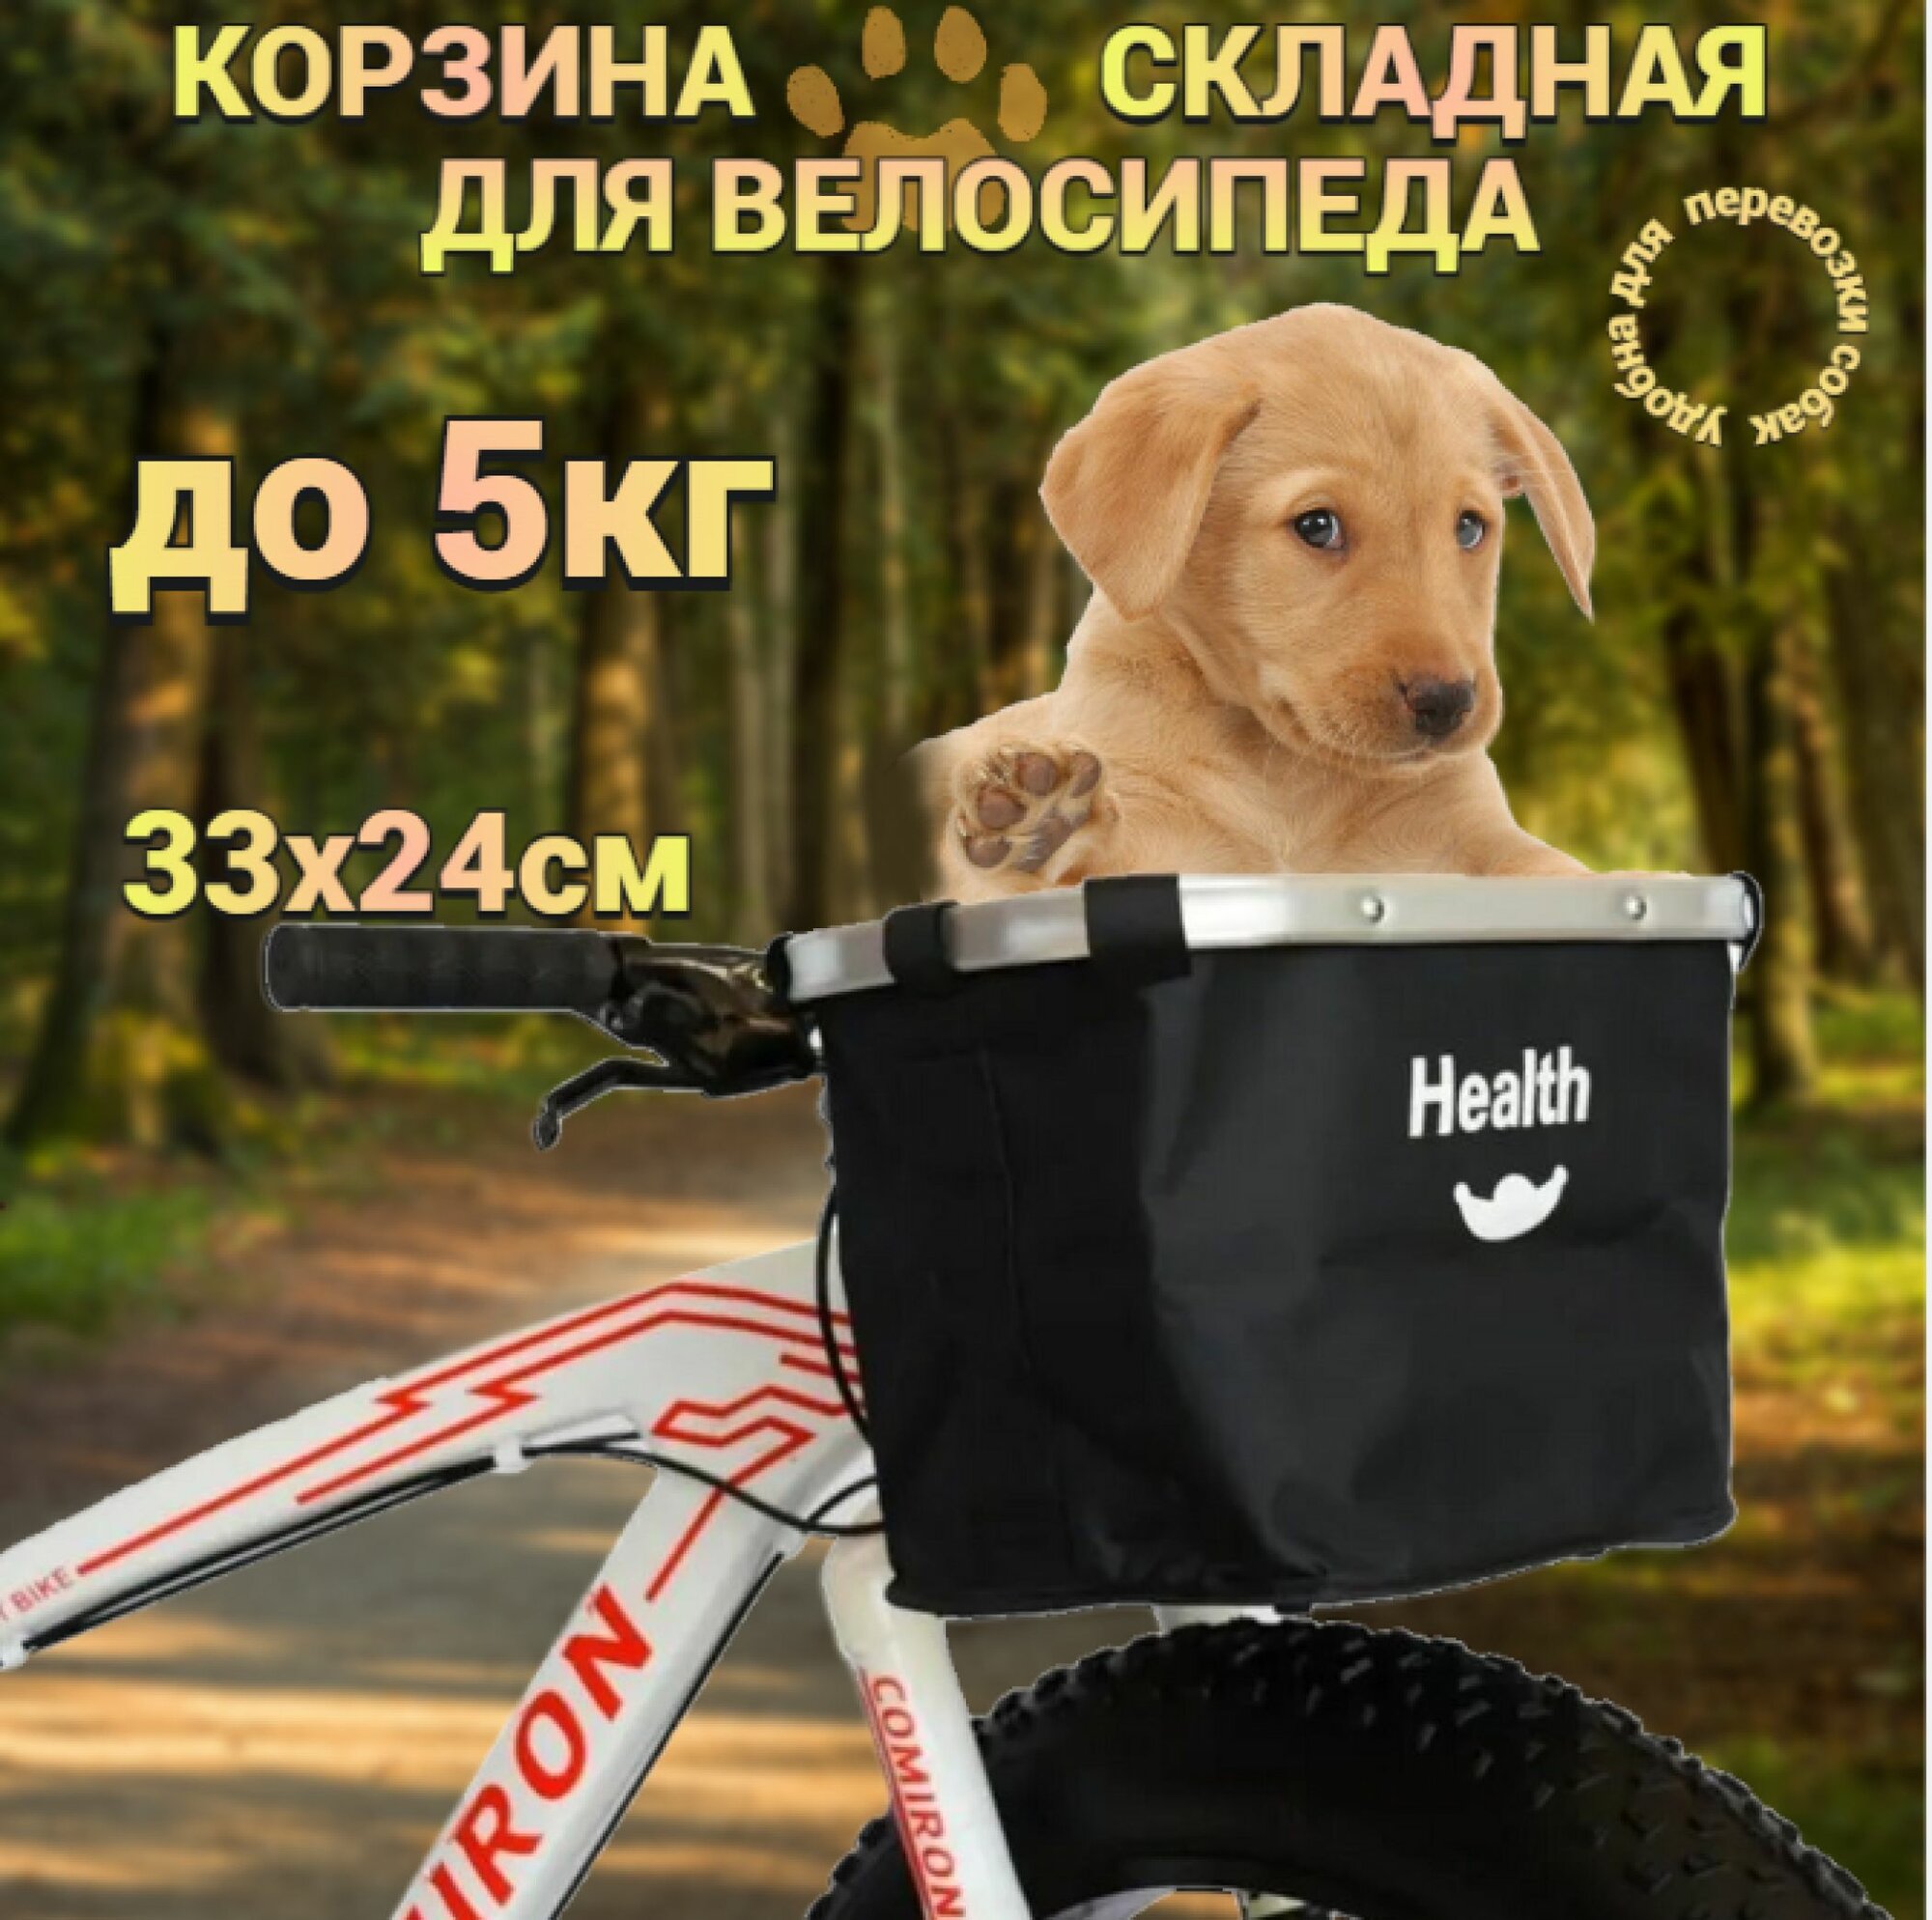 Корзина складная для велосипеда с алюминиевым держателем на руль(для покупок, перевозки собак)